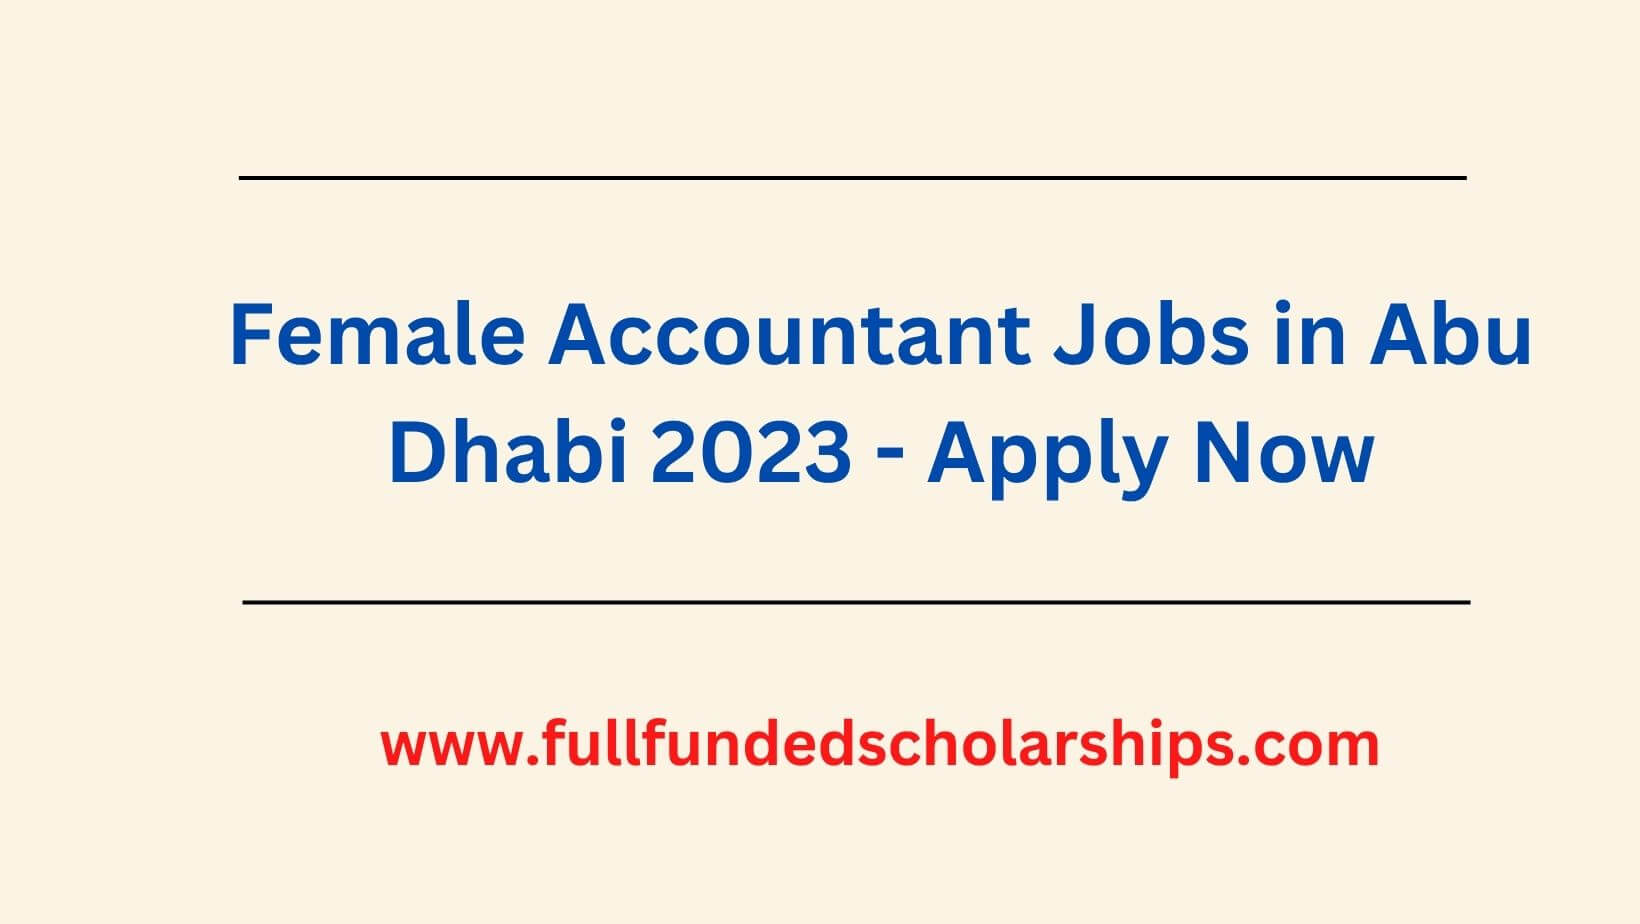 Female Accountant Jobs in Abu Dhabi 2023